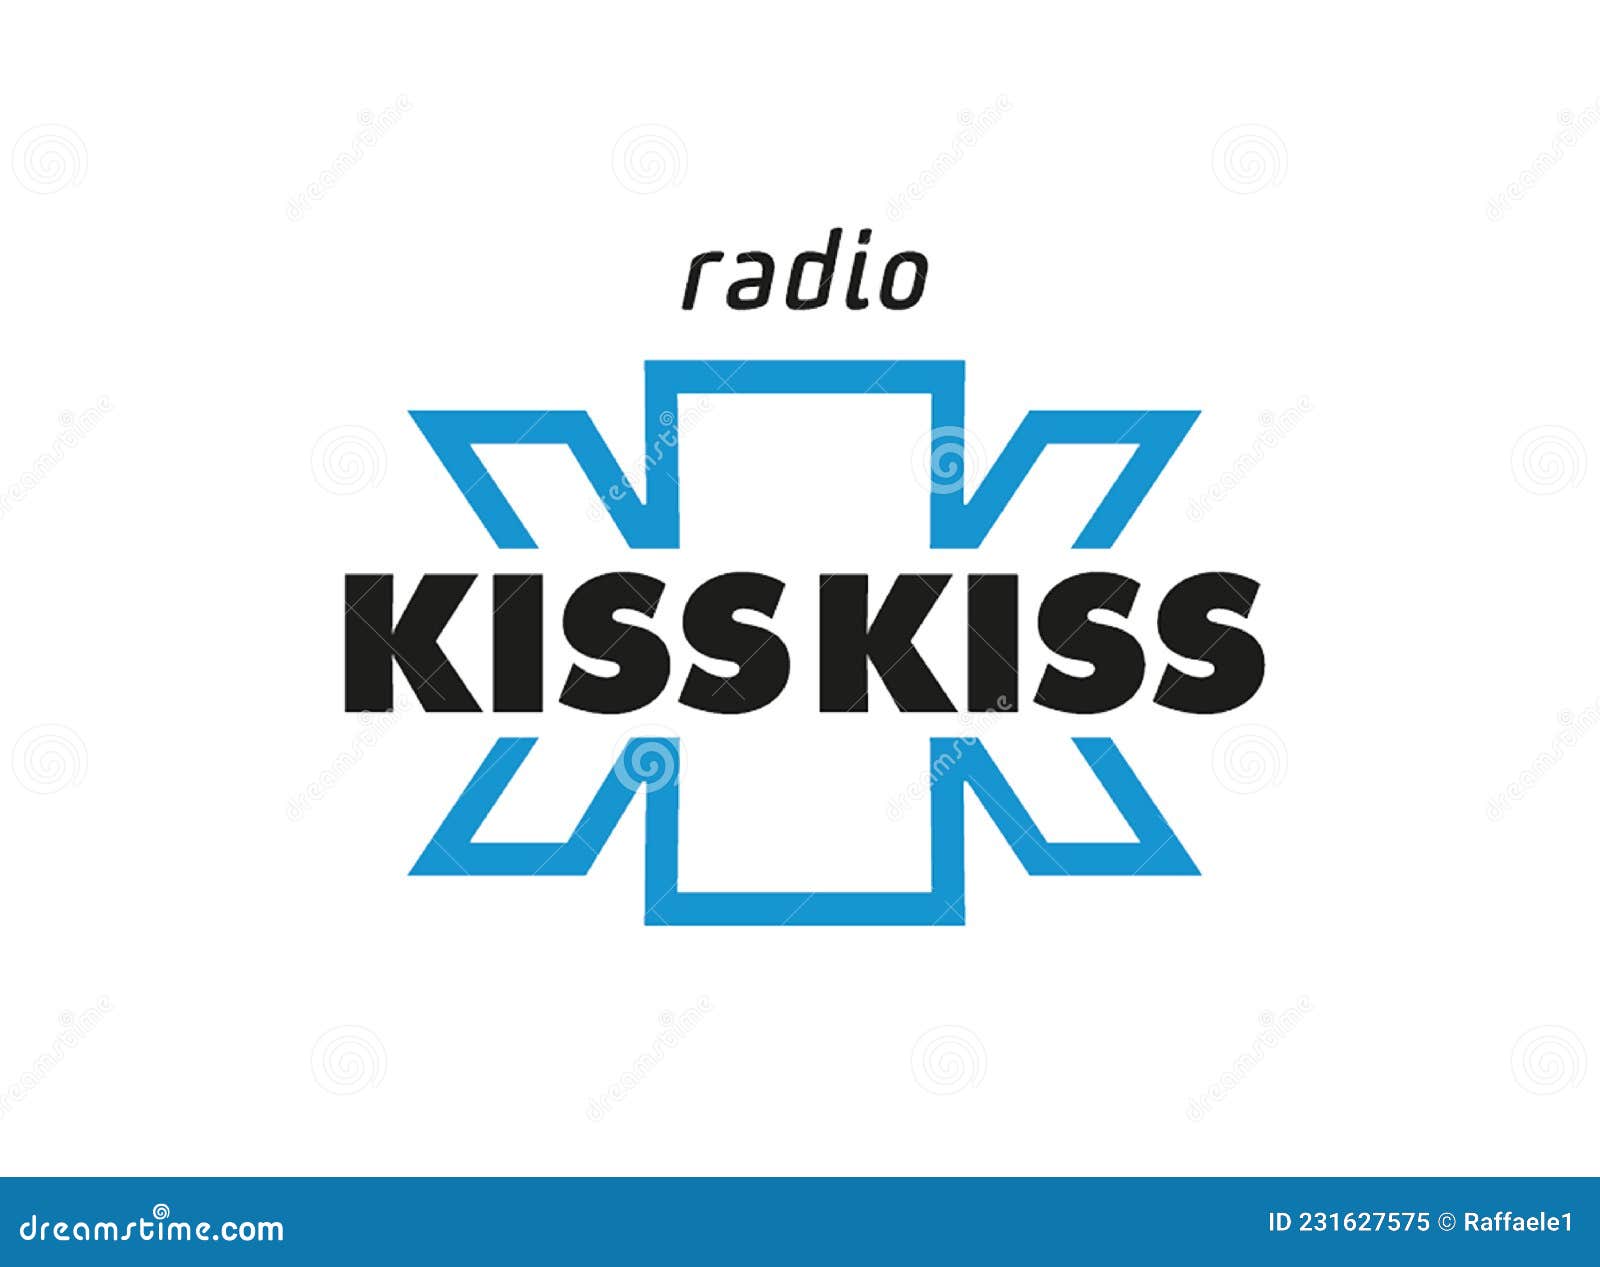 radio kiss kiss logo